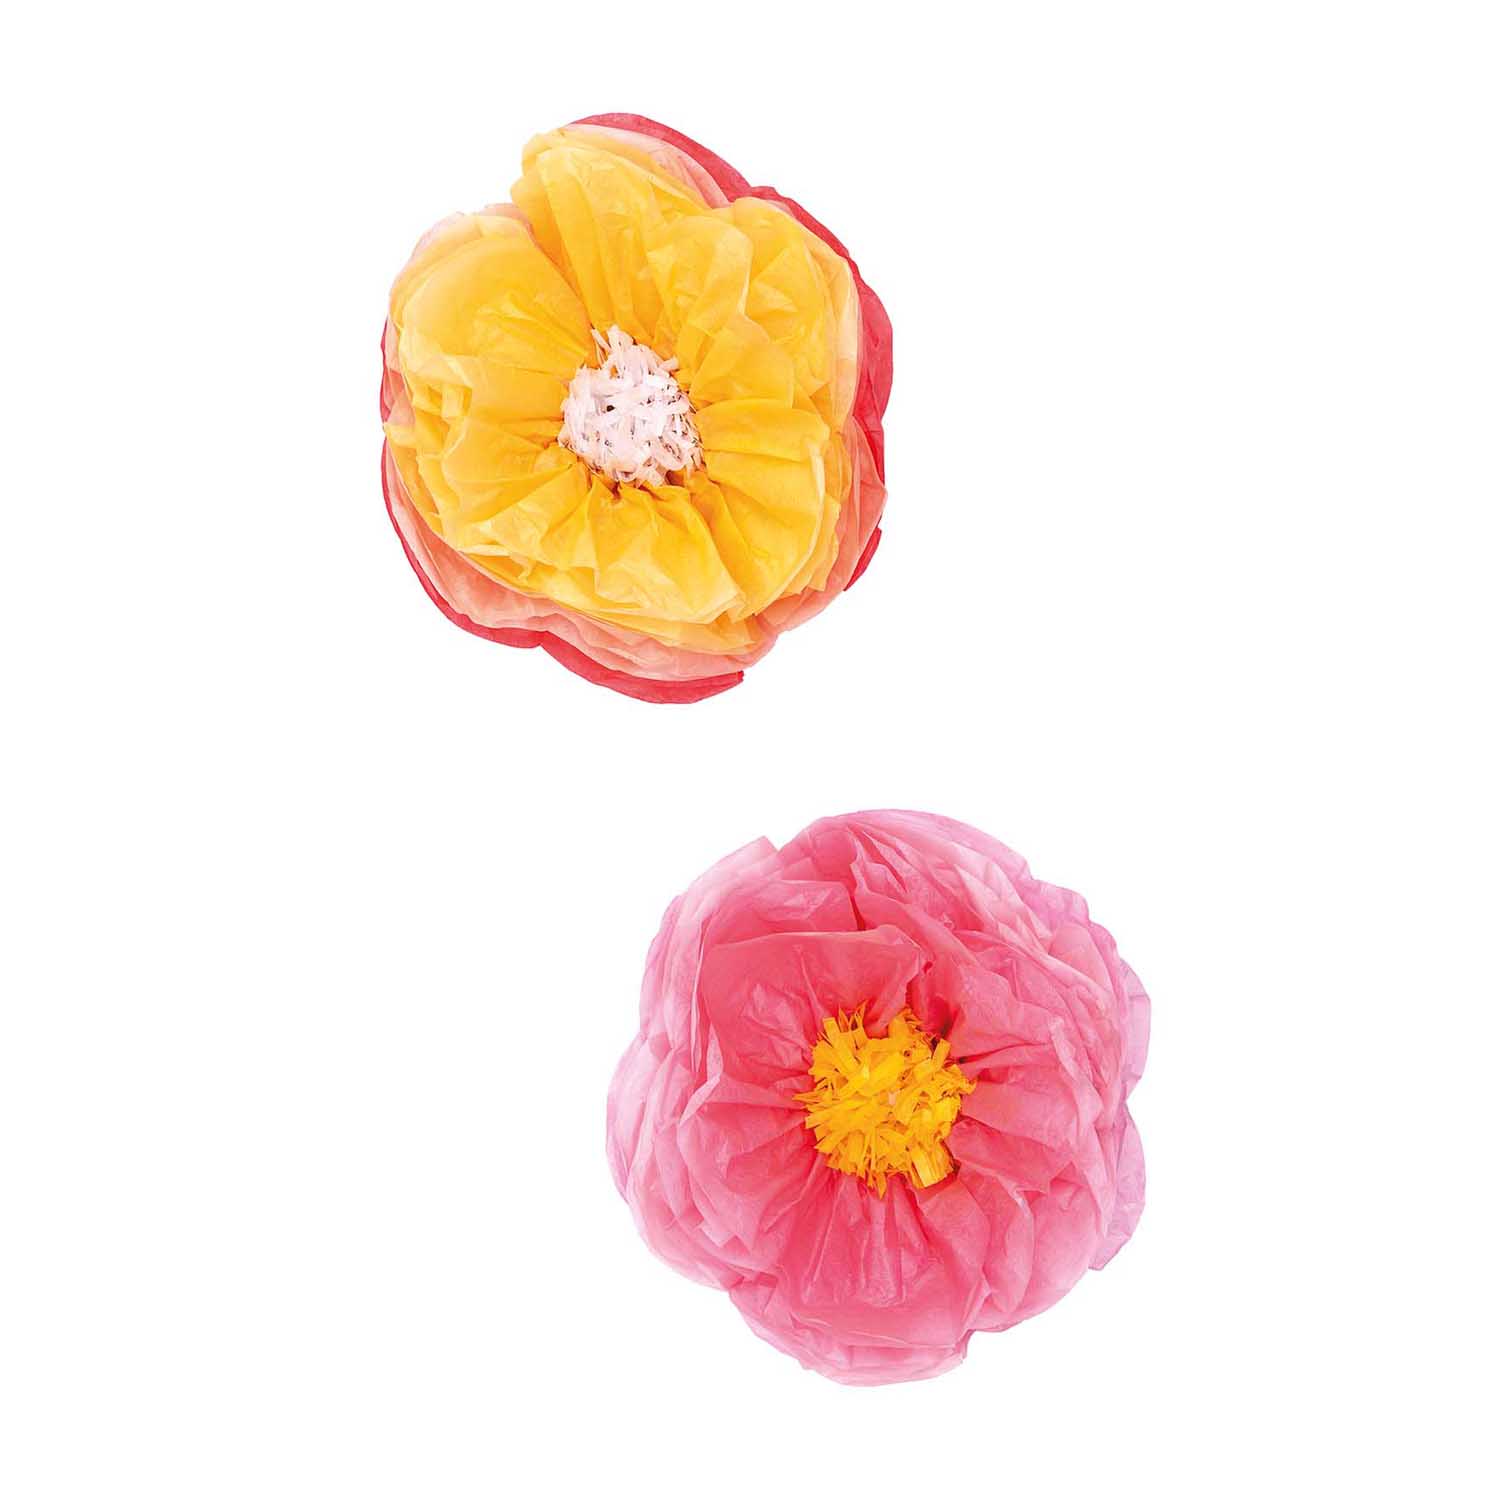 Tissue papier bloemen roze en geel (Ø 25cm)